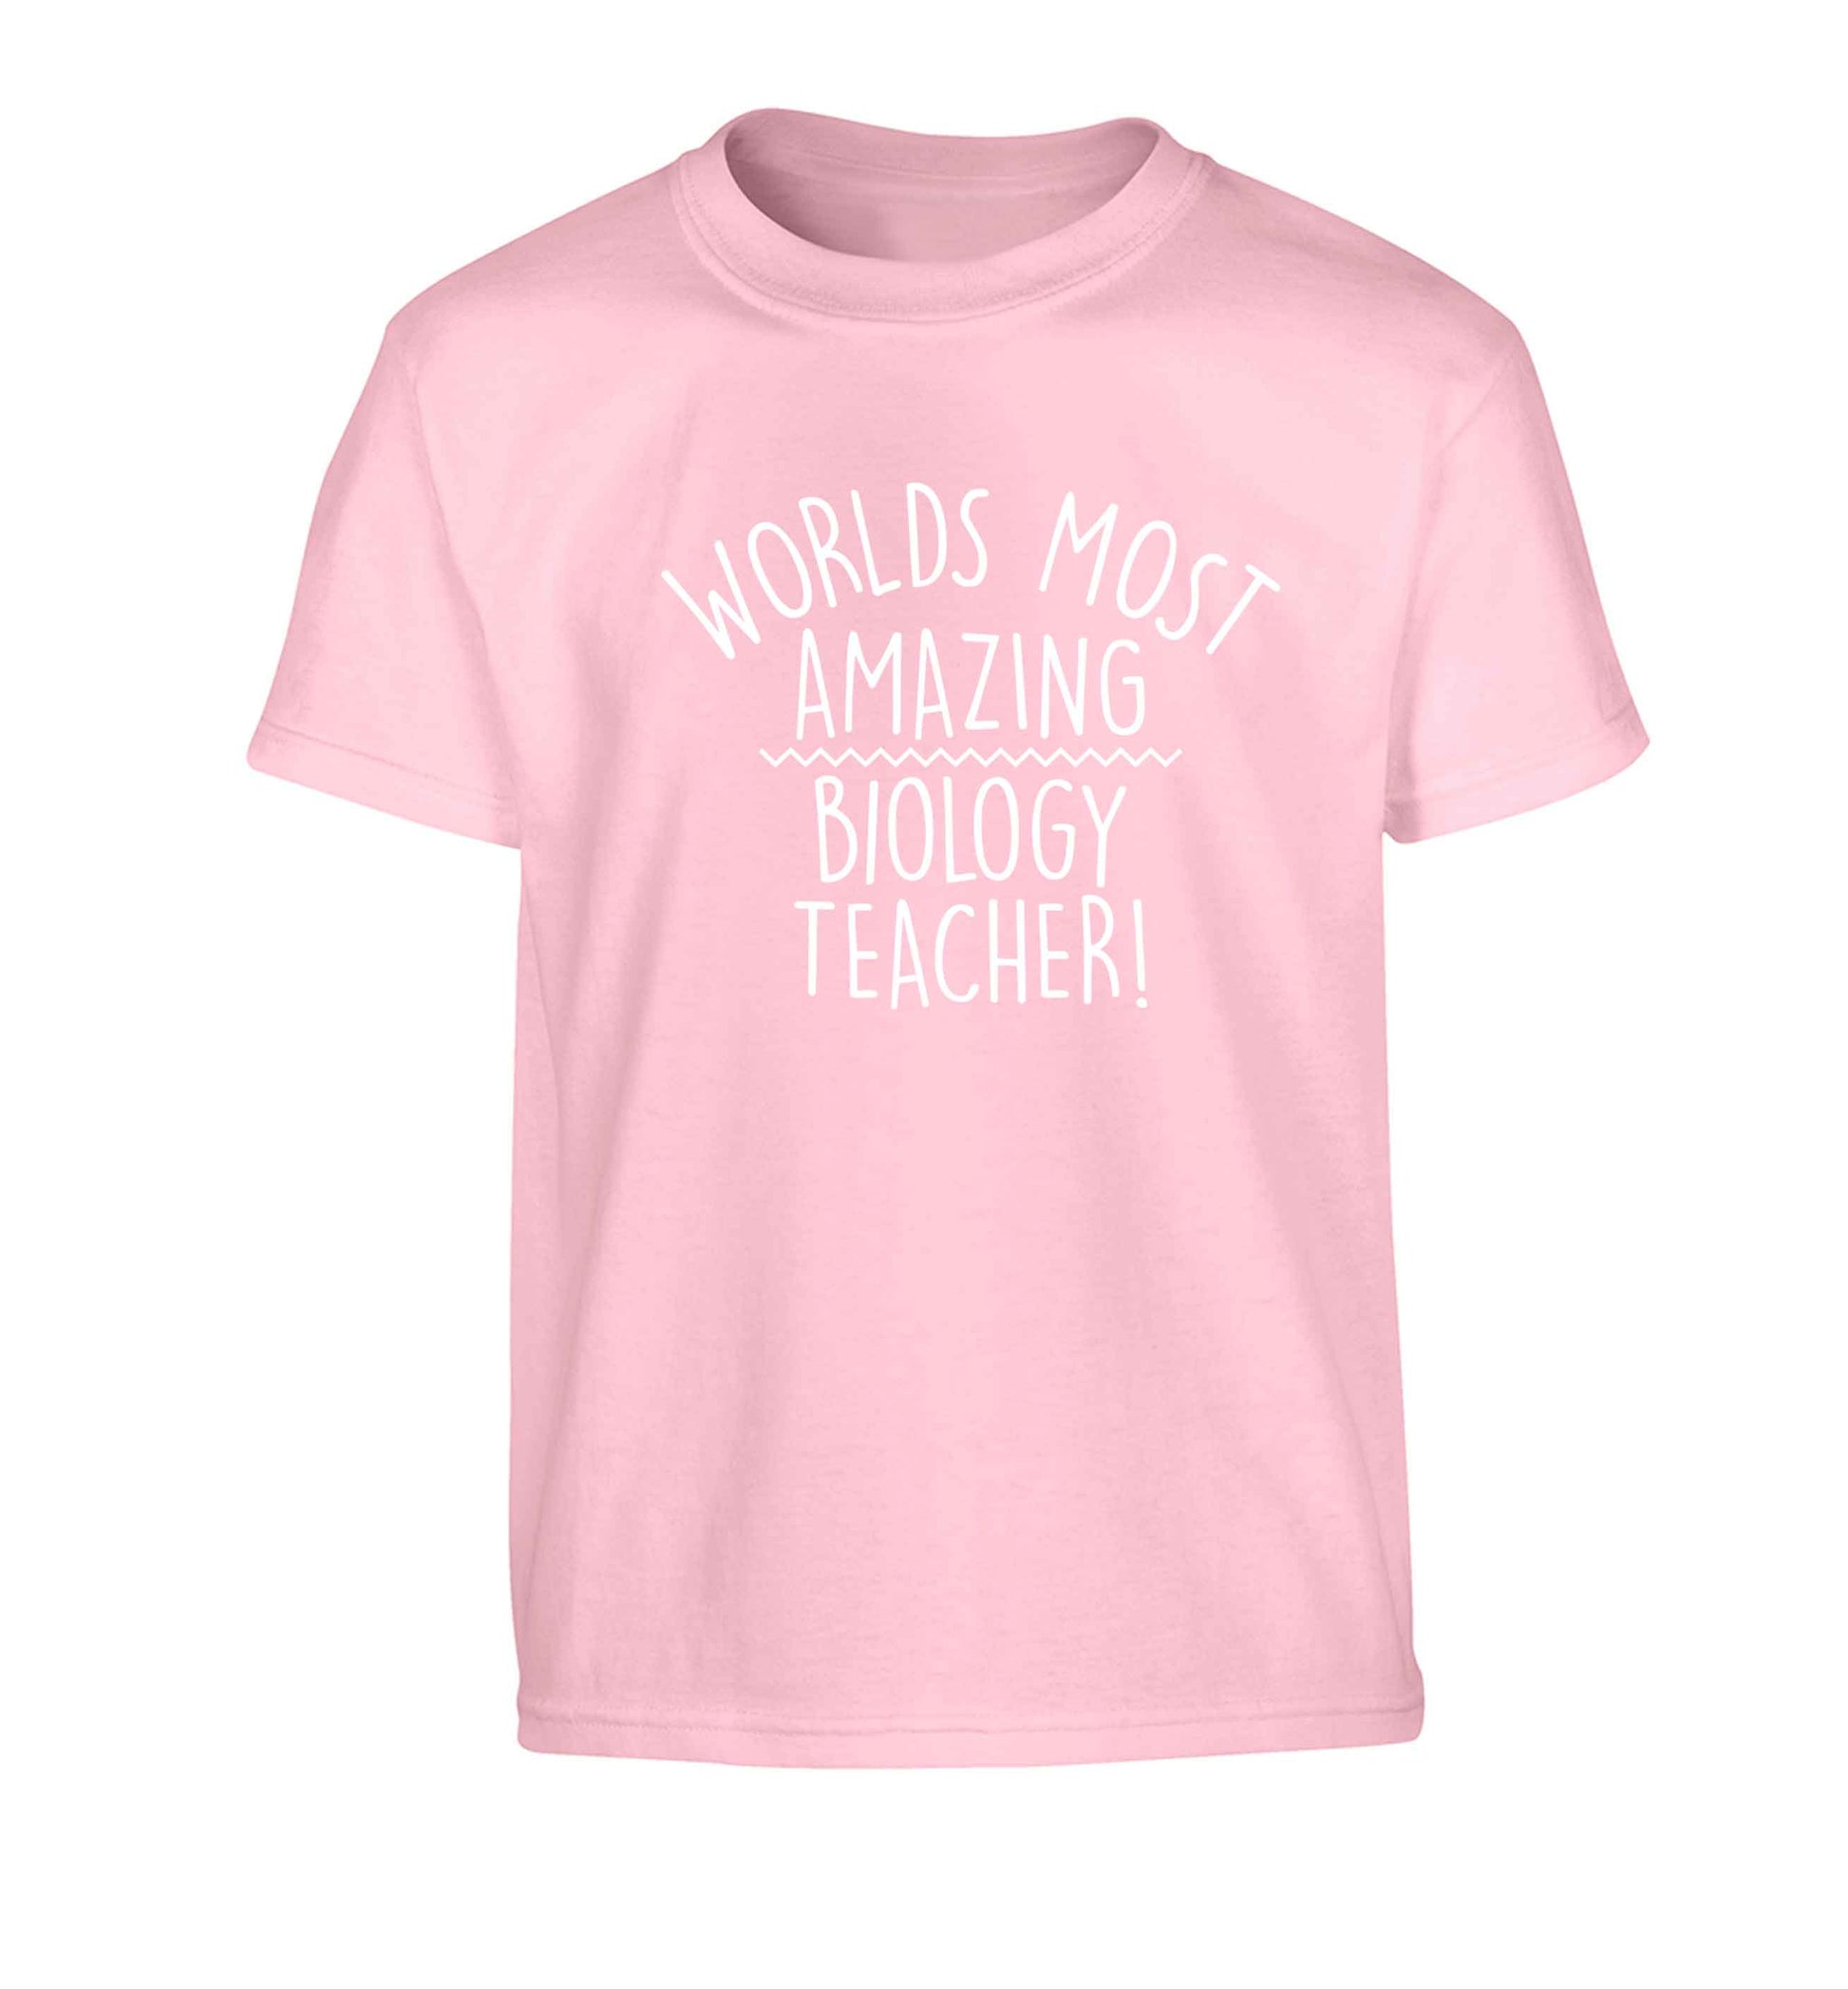 Worlds most amazing biology teacher Children's light pink Tshirt 12-13 Years